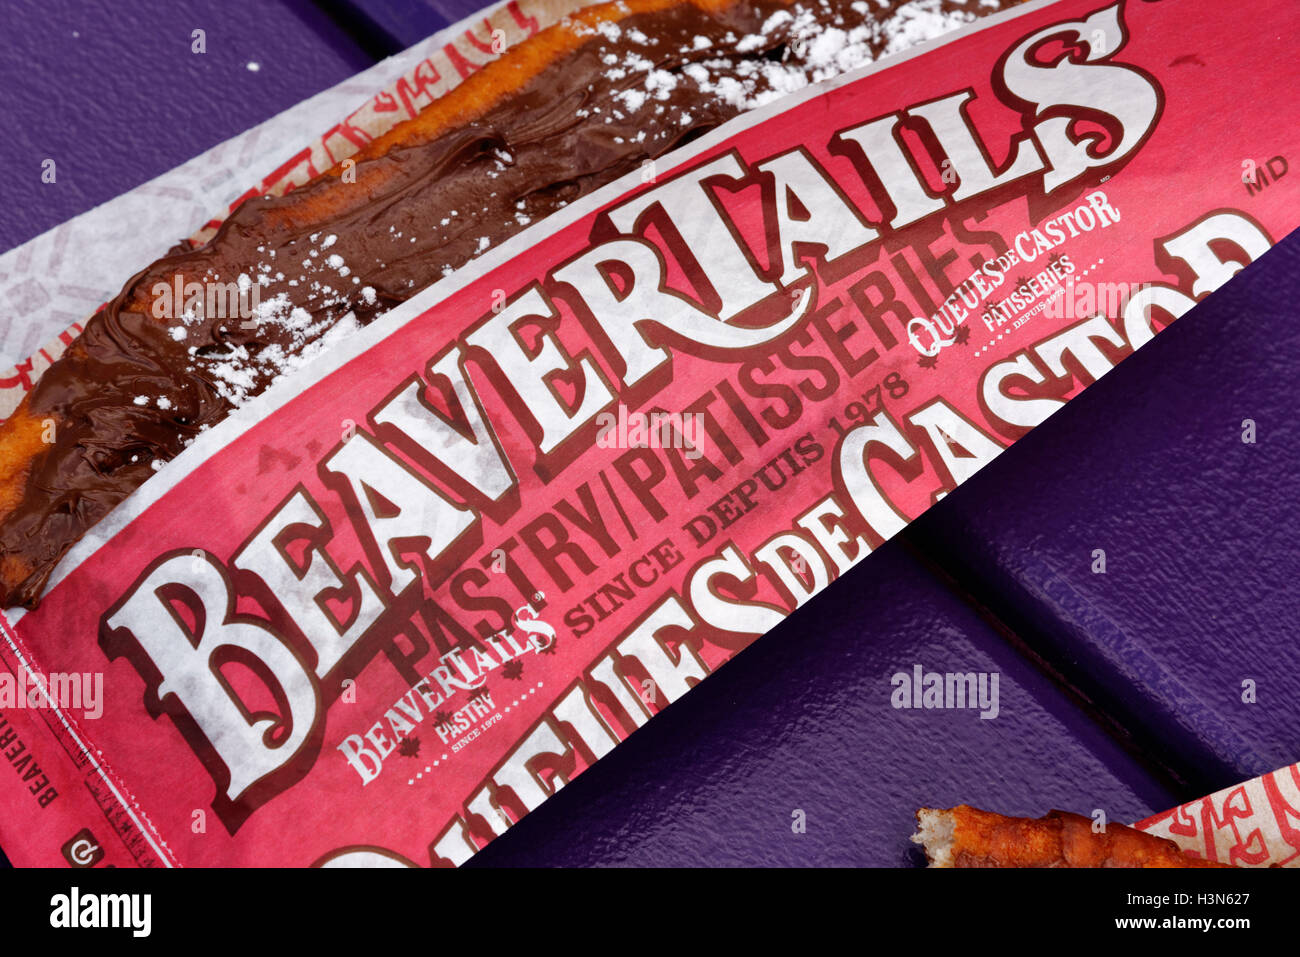 Beavertails, une délicatesse pâtisserie canadienne Banque D'Images